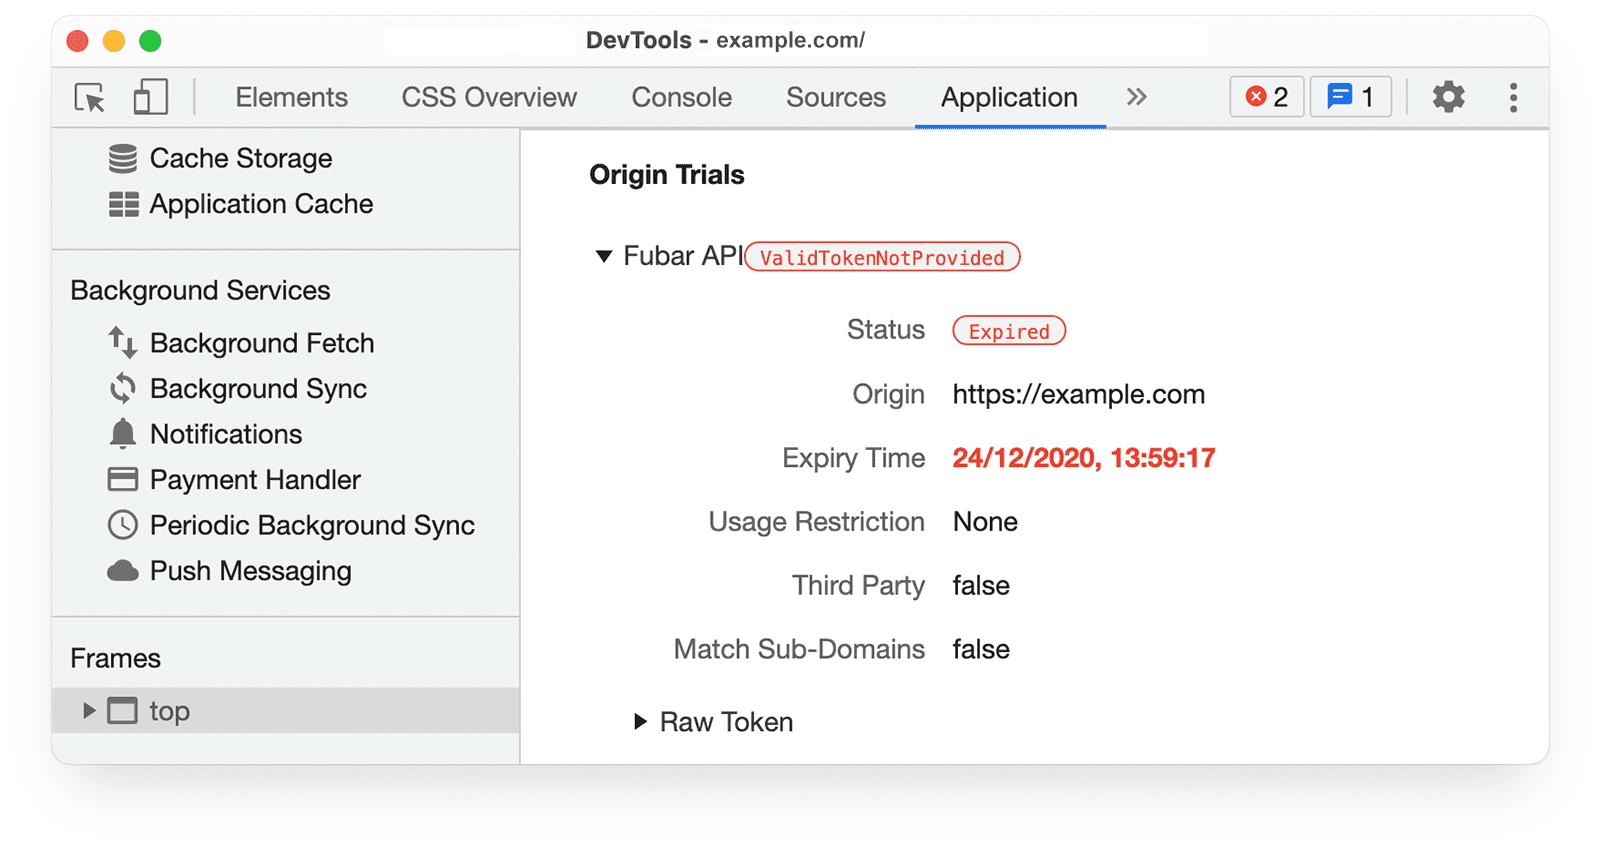 Informasi uji coba origin
Chrome DevTools di panel Application yang menampilkan ValidTokenNotProvided dan Status Kedaluwarsa